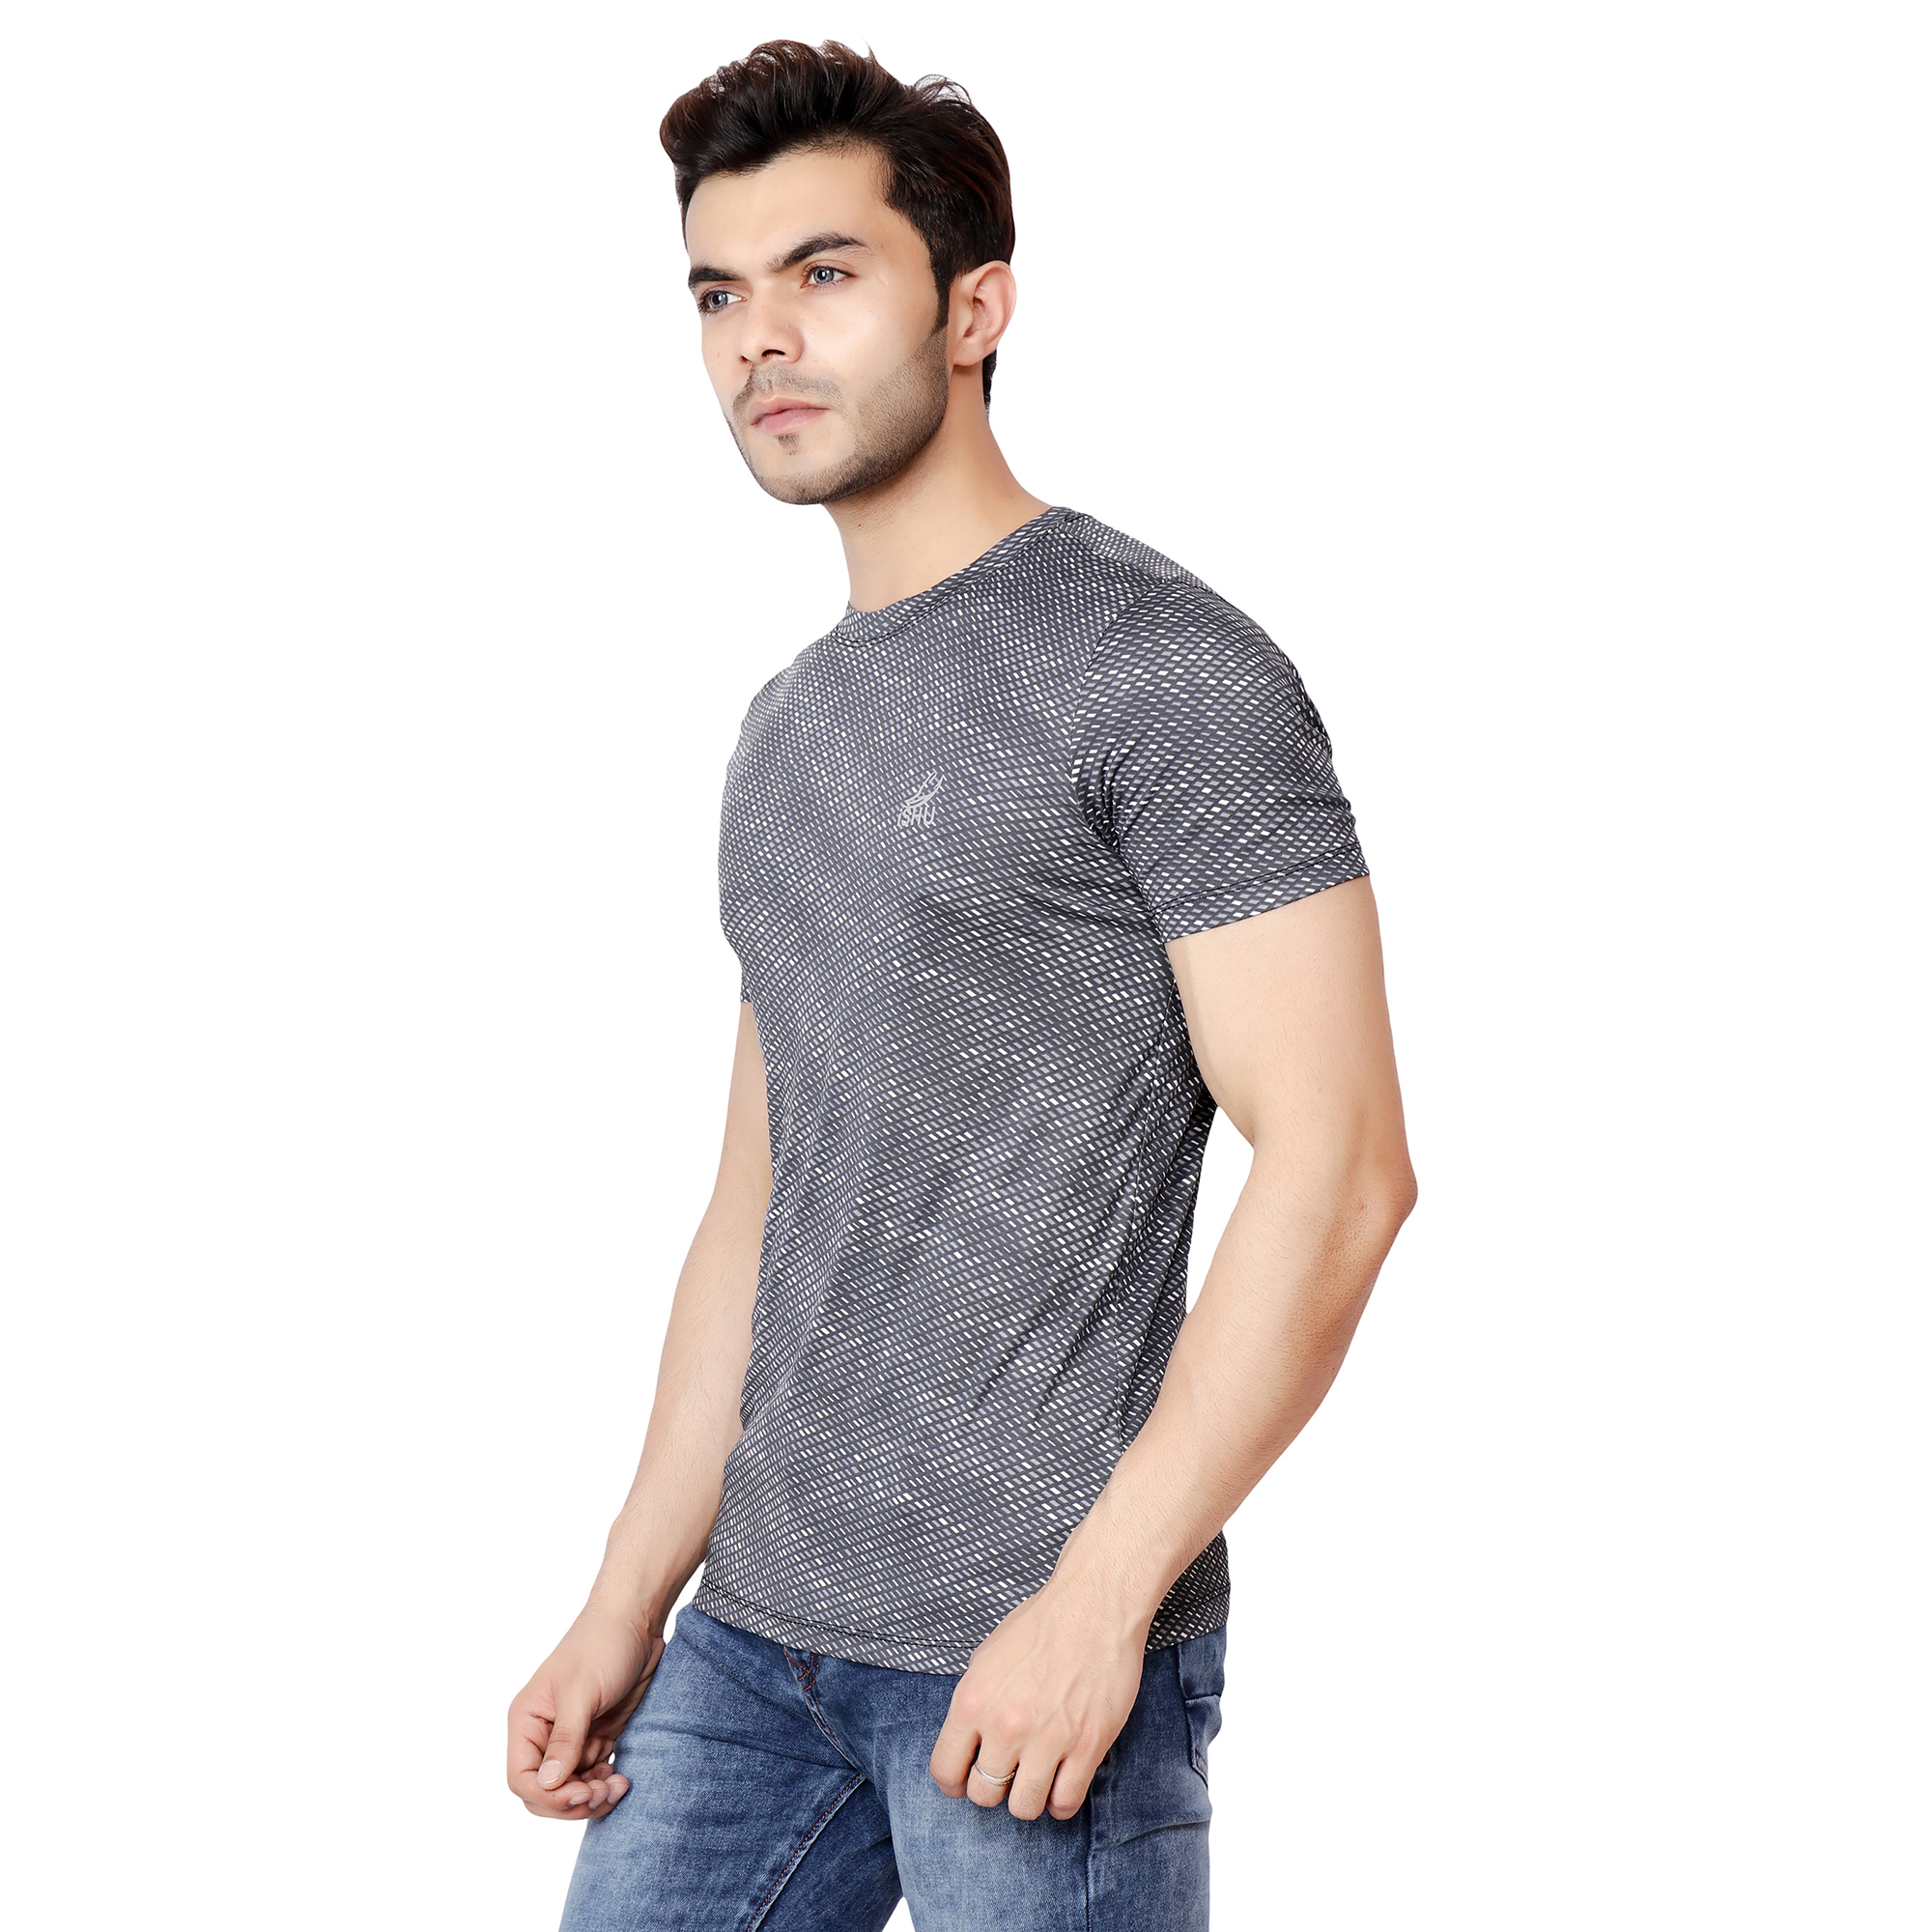 Buy Ishu Mens Black Dri-fit Half Sleeves T-shirt Online - Get 75% Off